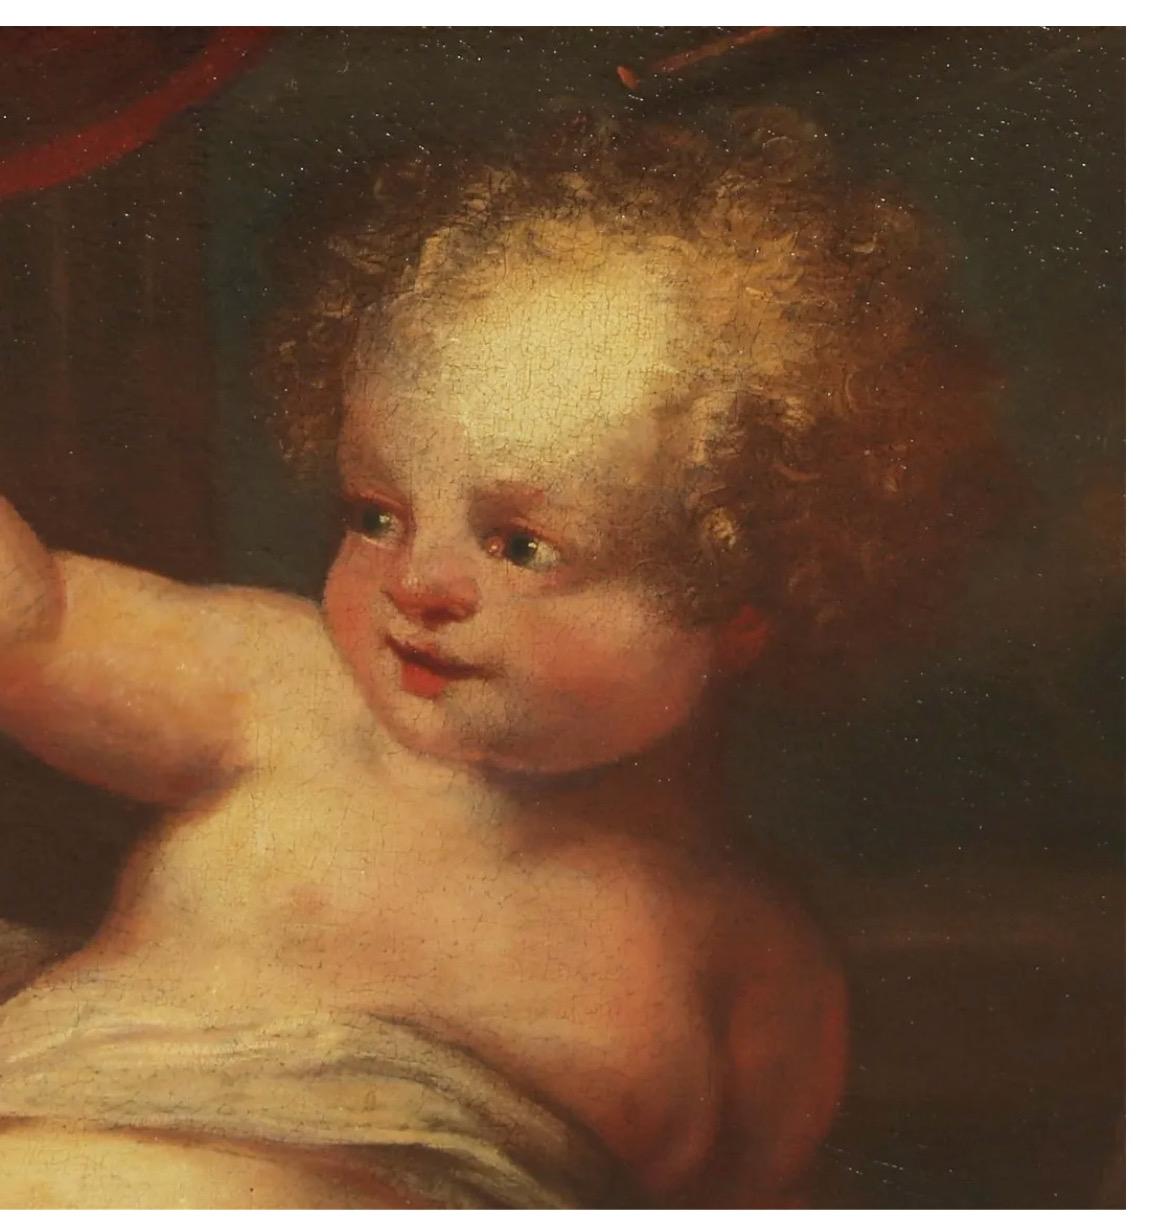 Dies ist ein charmantes Gemälde eines Cherubs mit einem nach vorne ausgestreckten Arm, der vielleicht einen Blumenstrauß in der Hand hält. Das Gemälde stammt aus der Mitte des 18. Jahrhunderts und ist wahrscheinlich ein Ausschnitt aus einem größeren